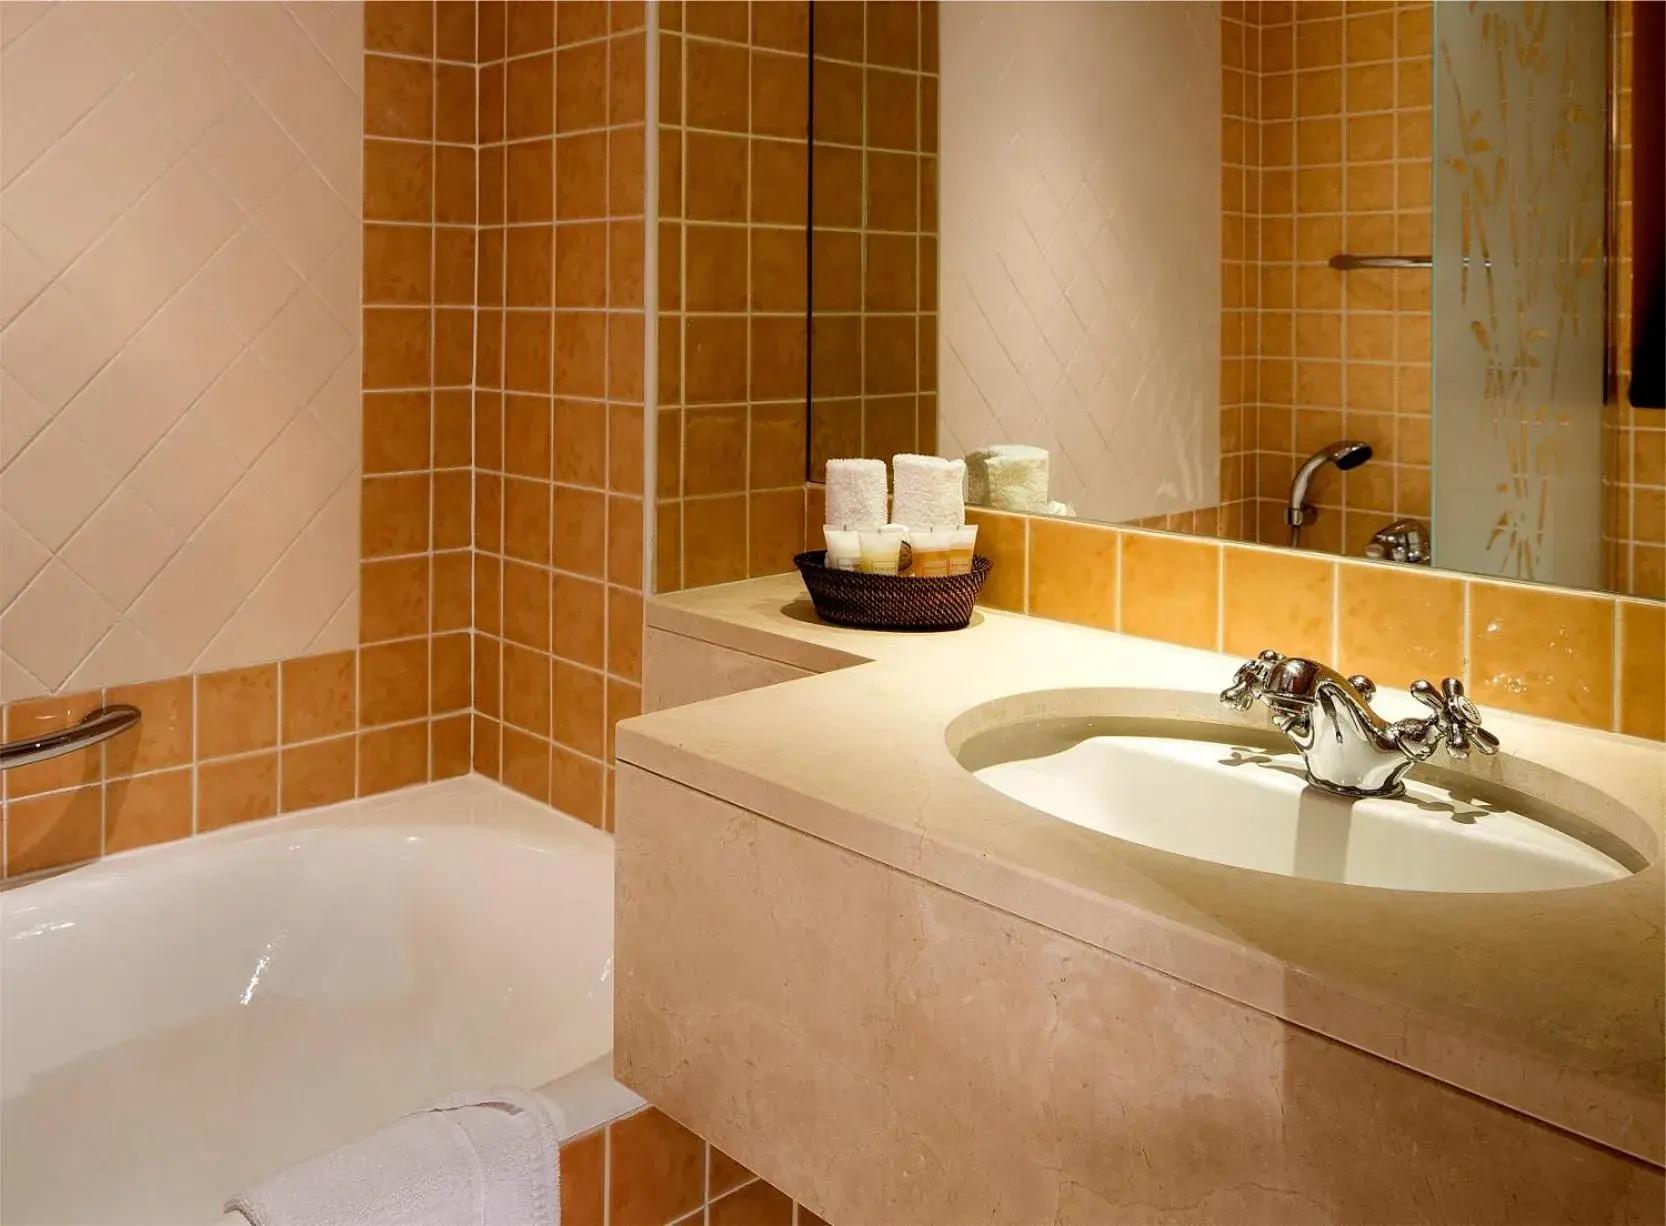 Bathroom in Hotel Britannique